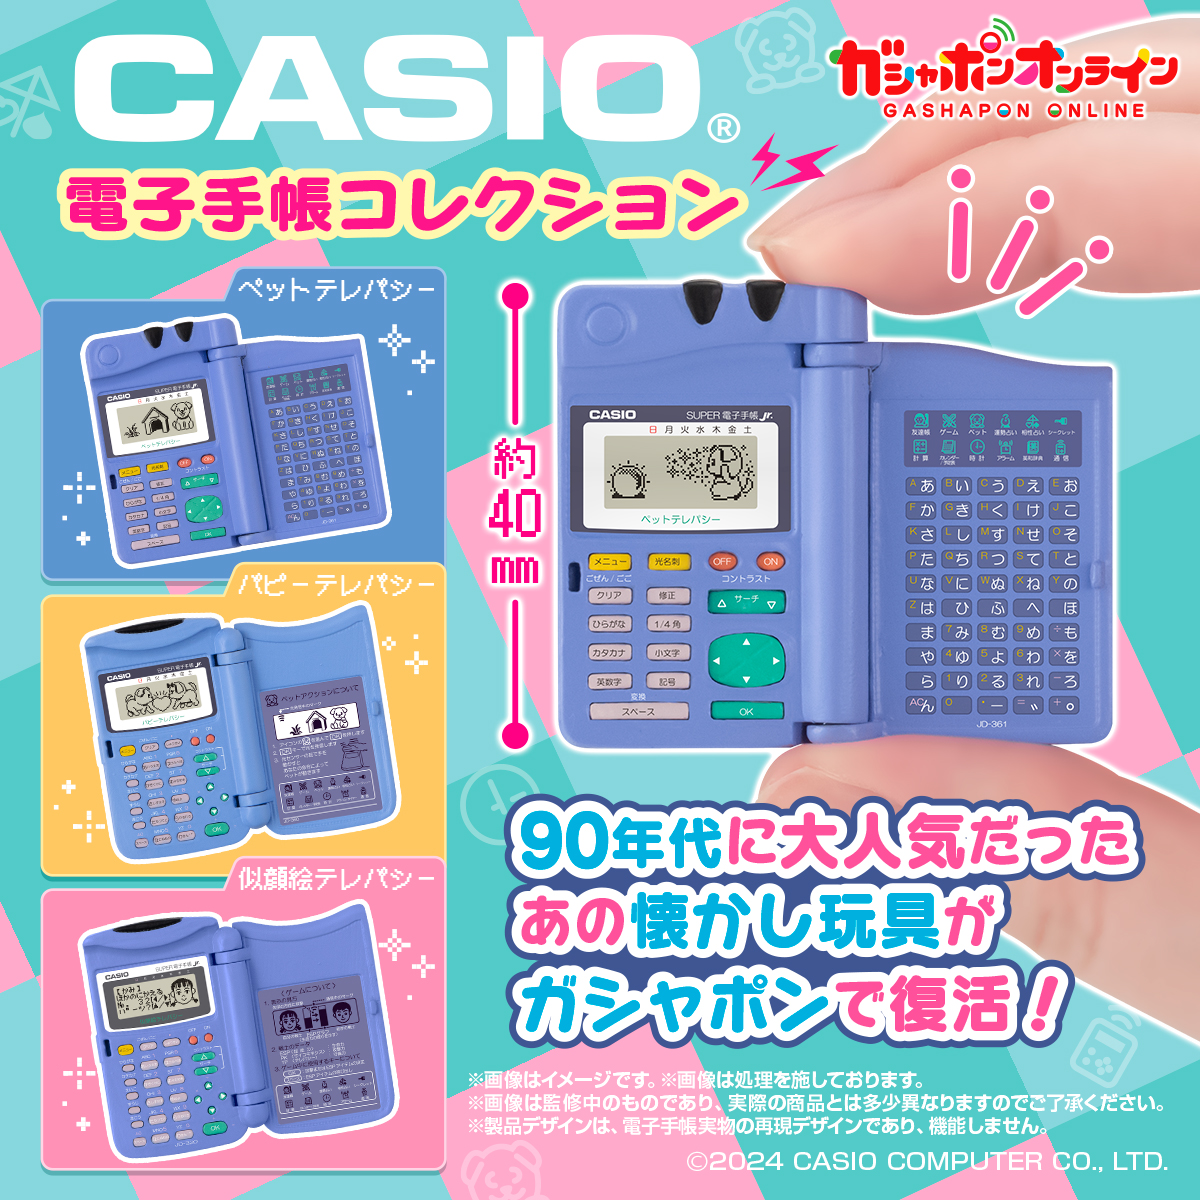 CASIO電子手帳コレクション | ナムコパークス オンラインストア 